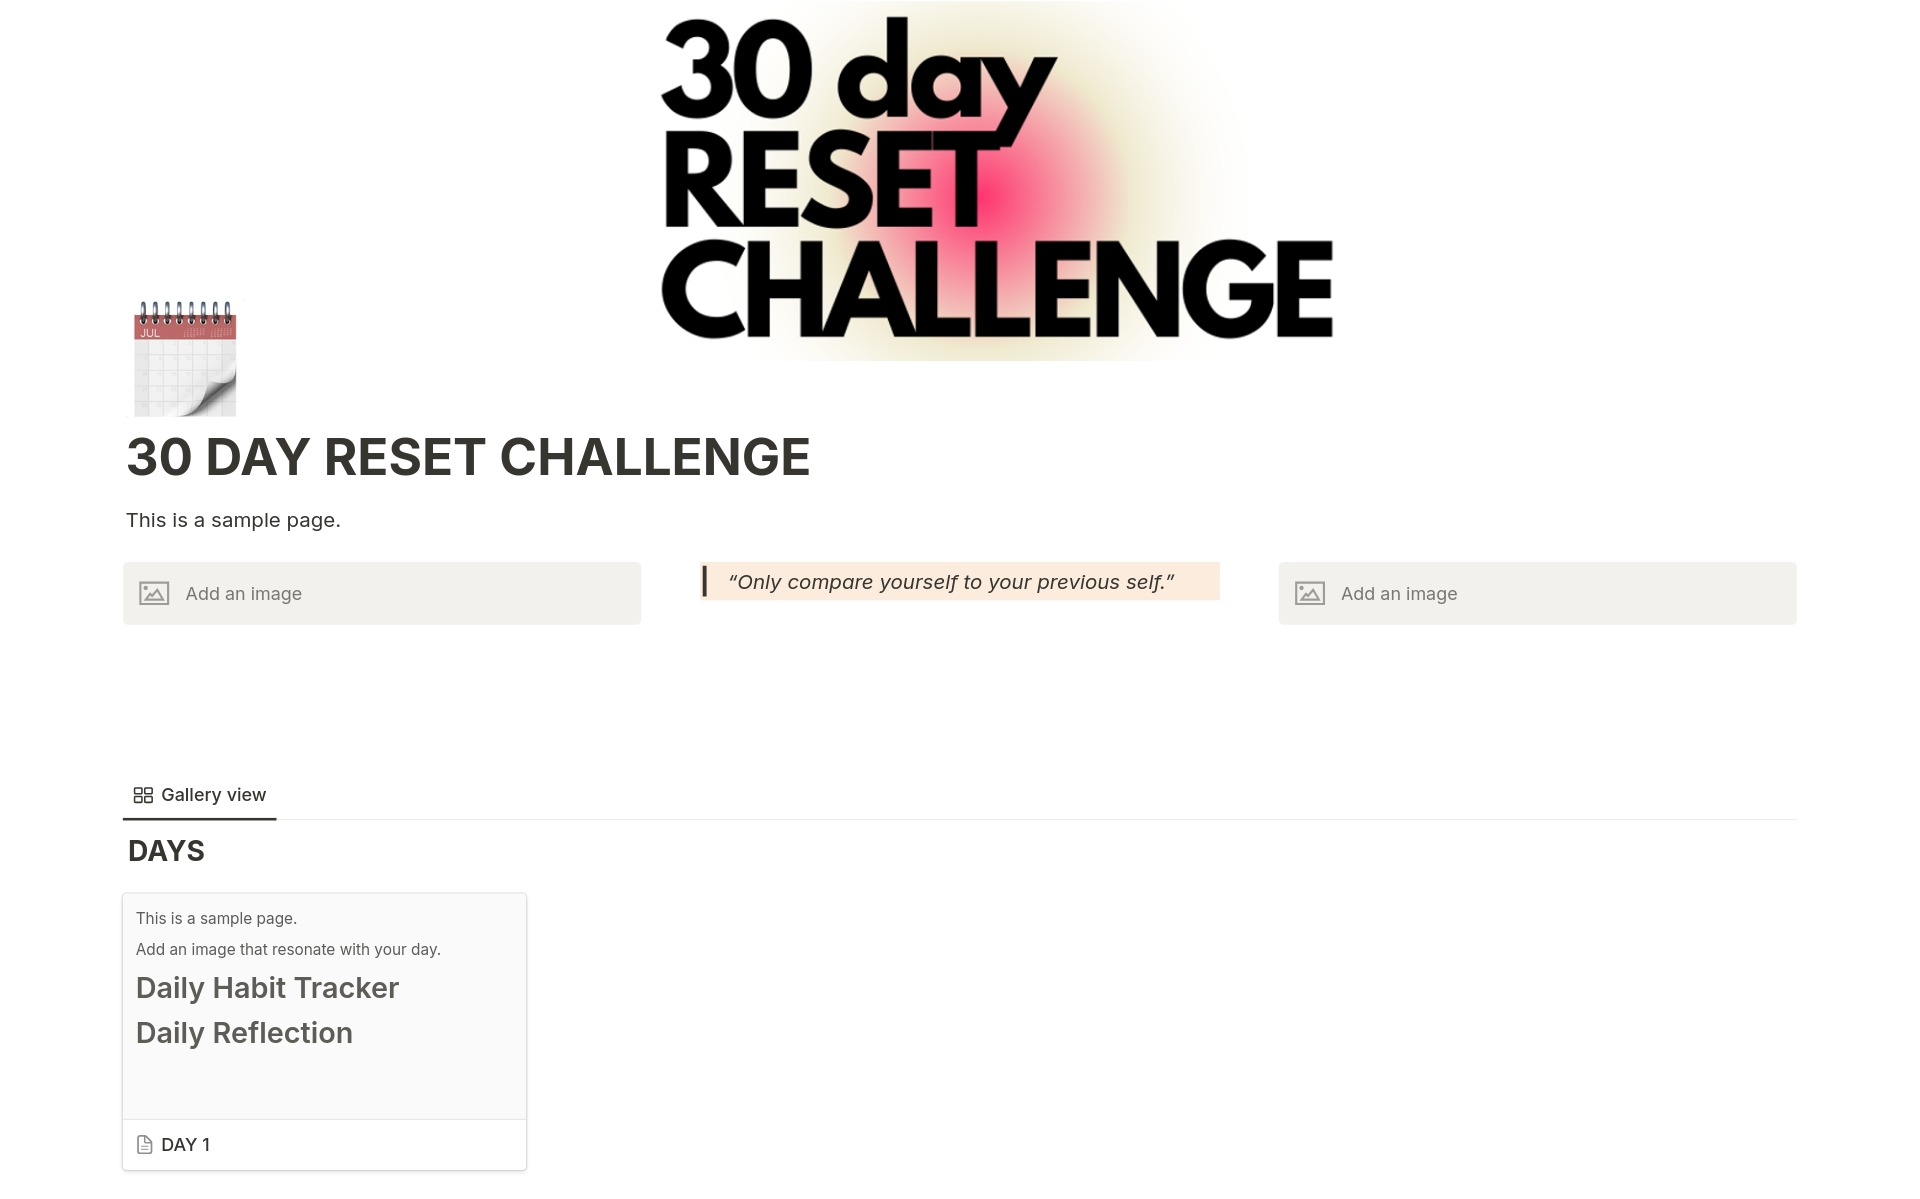 30 Day Reset Challenge님의 템플릿 미리보기